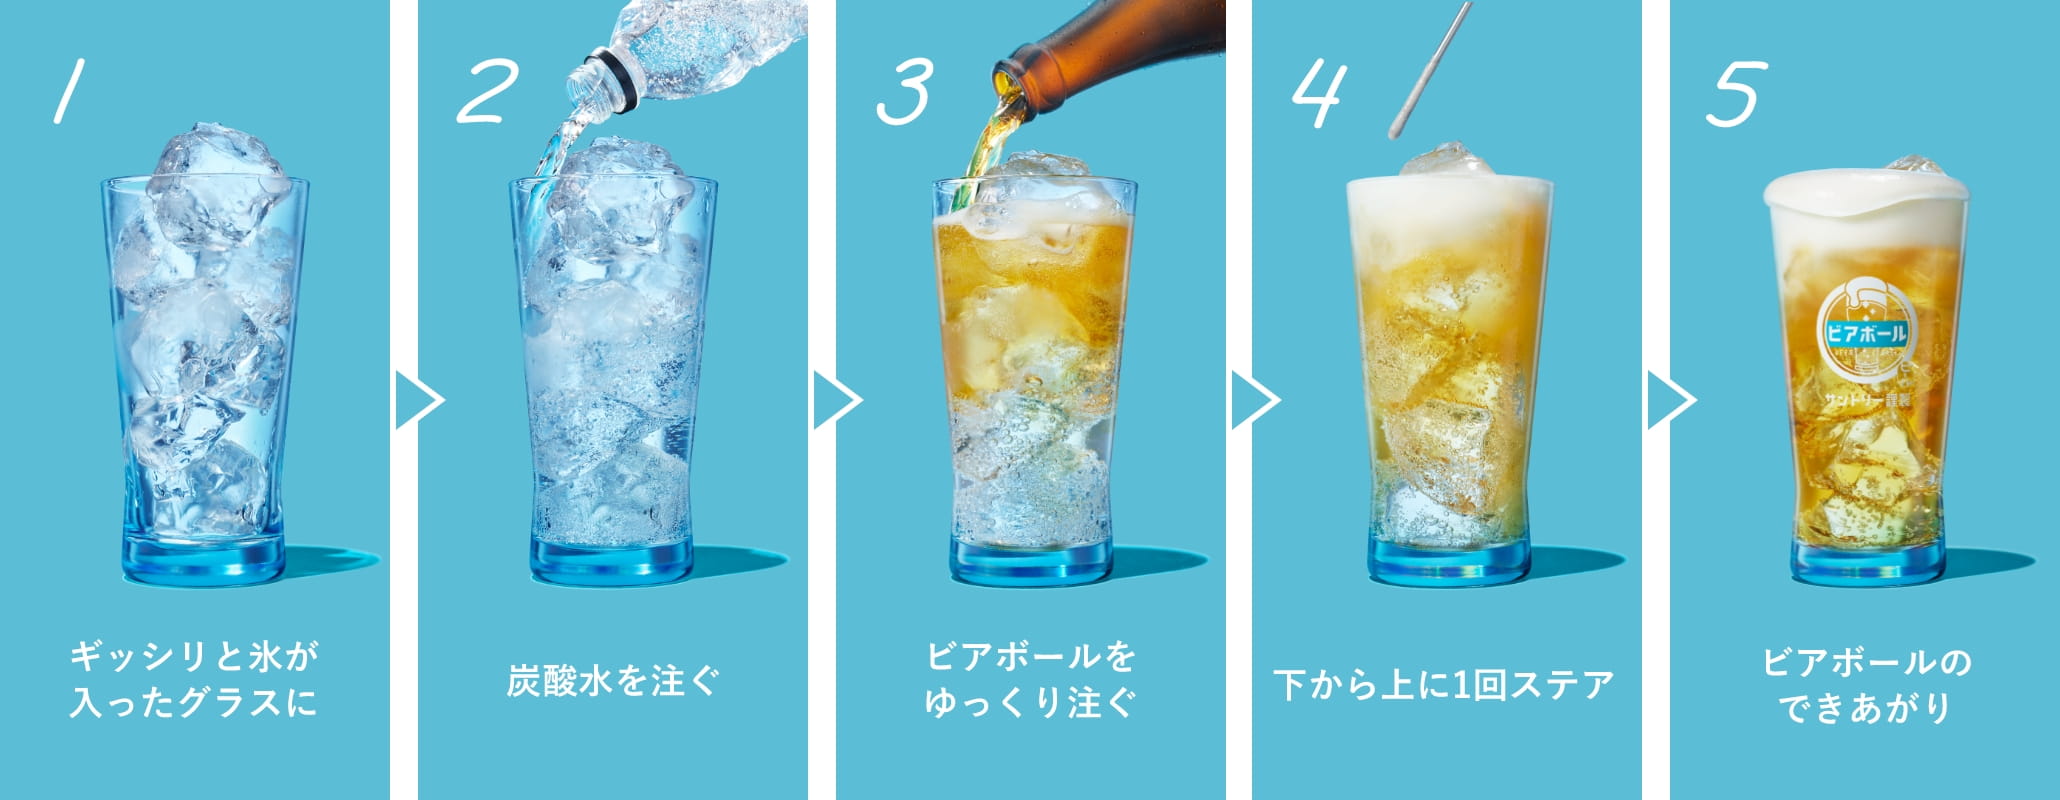 1ギッシリと氷が入ったグラスに 2炭酸水を注ぐ 3ビアボールをゆっくり注ぐ 4下から上に1回ステア出来上がり